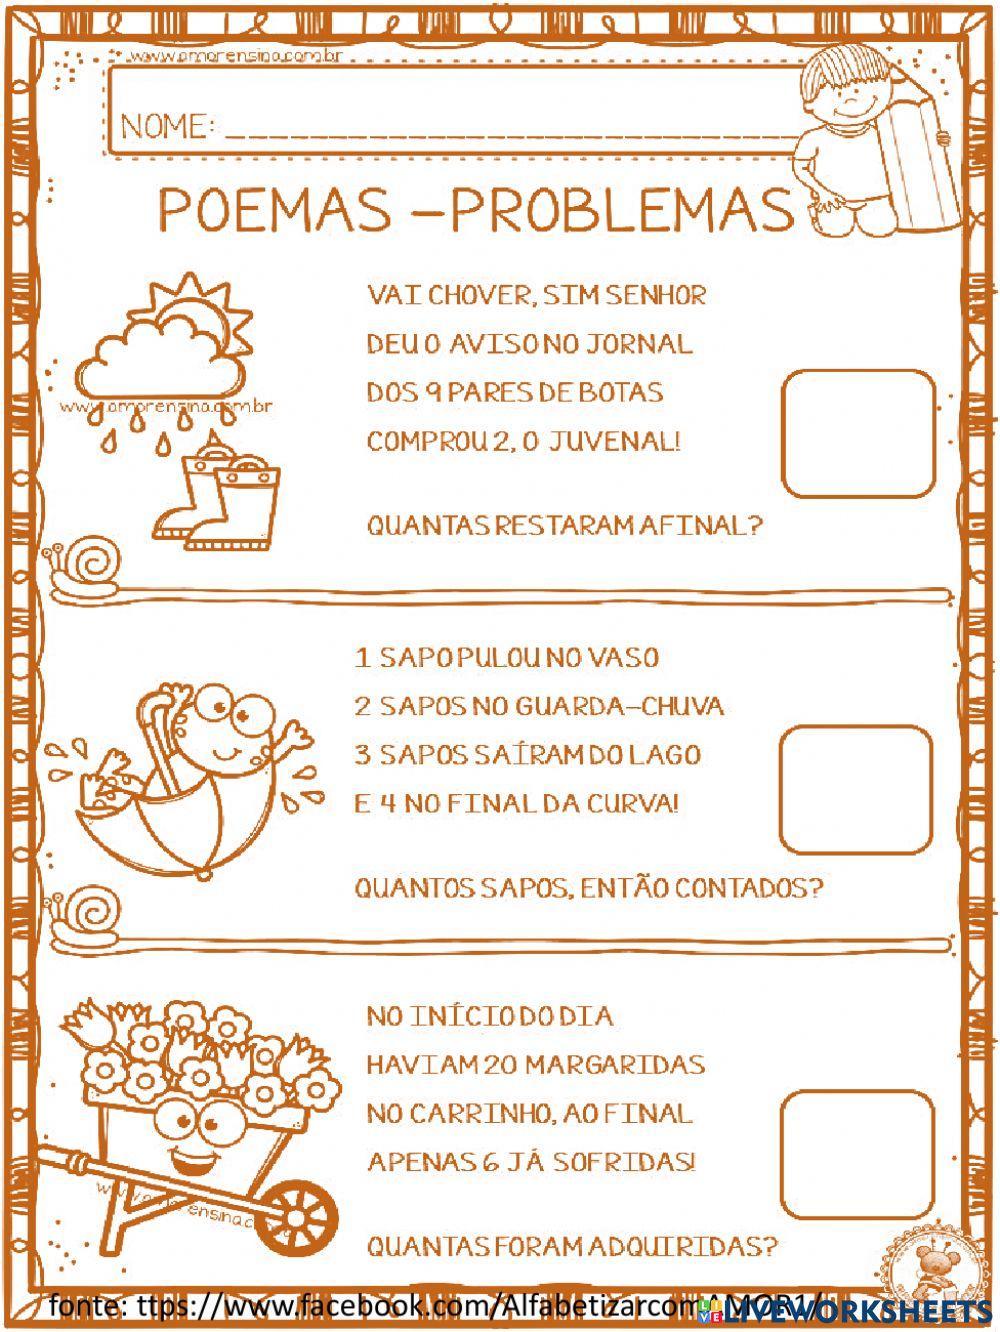 Poemas e problemas